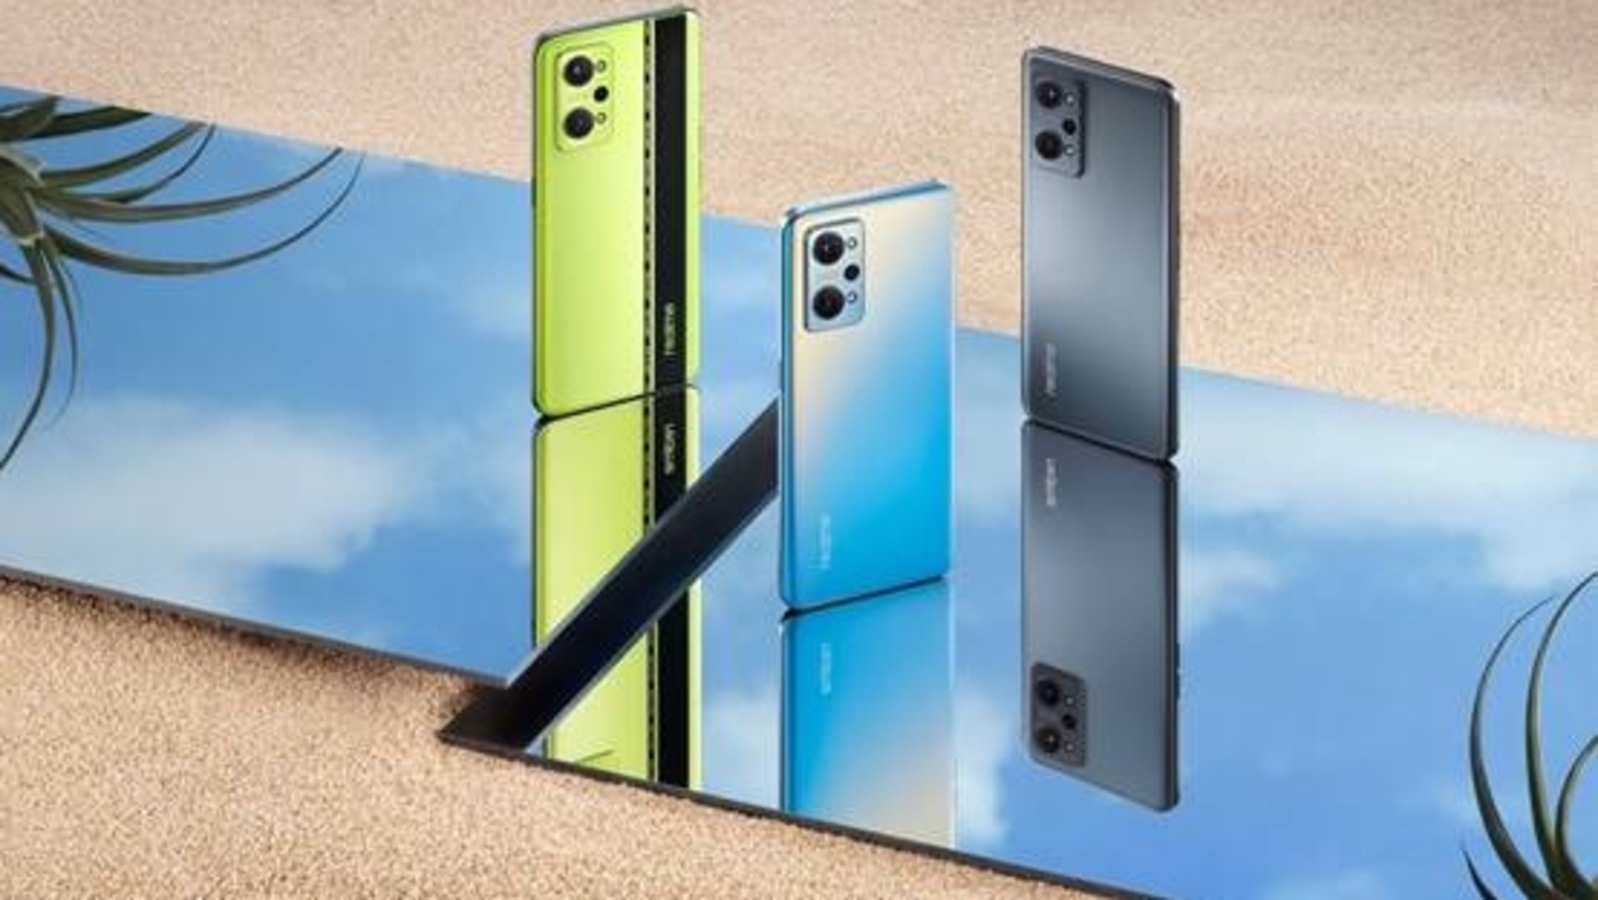 Flipkart Sale Big Price Drop Announced On Realme Smartphones Realme Gt Neo 2 Realme Gt Master Edition Realme 8s